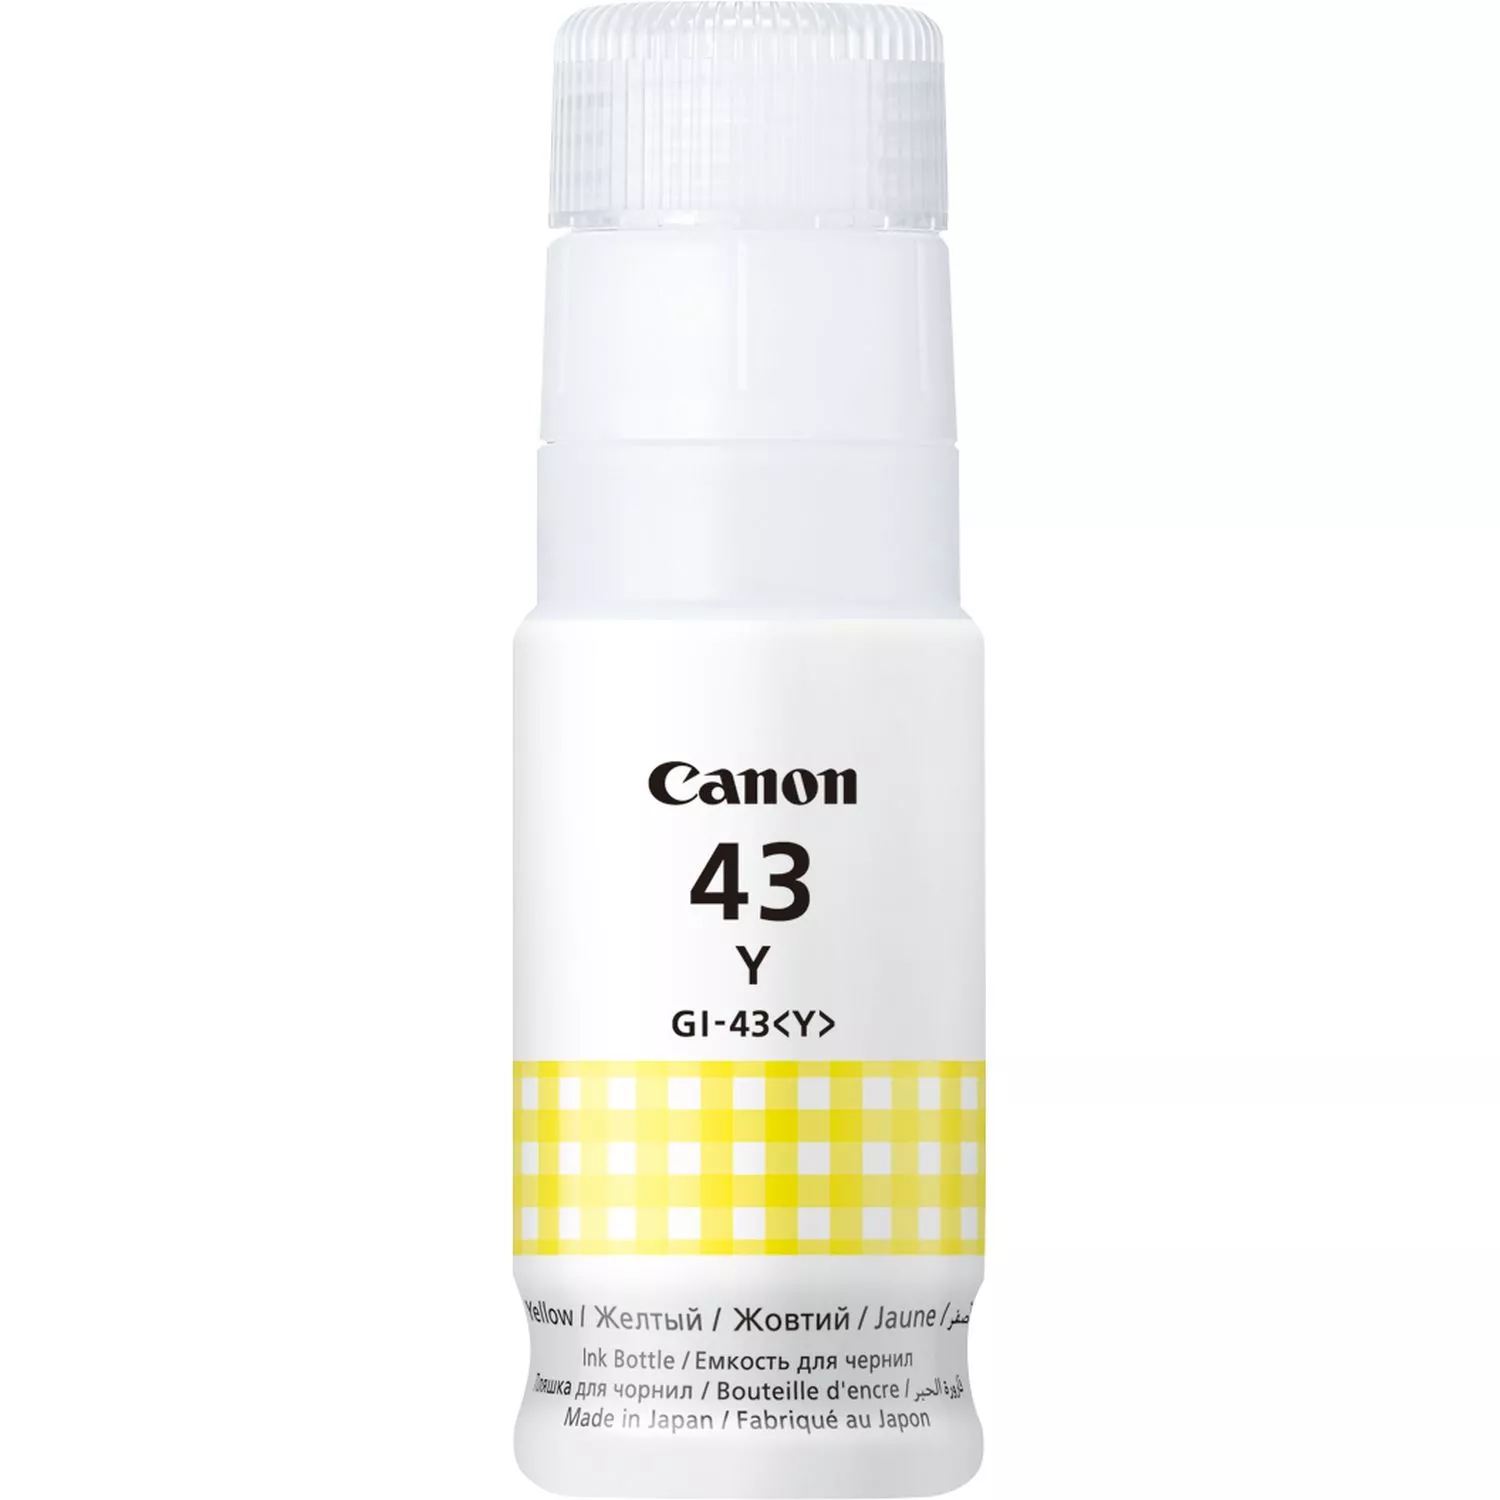 Achat CANON GI-43 Y EMB Yellow Ink Bottle et autres produits de la marque Canon